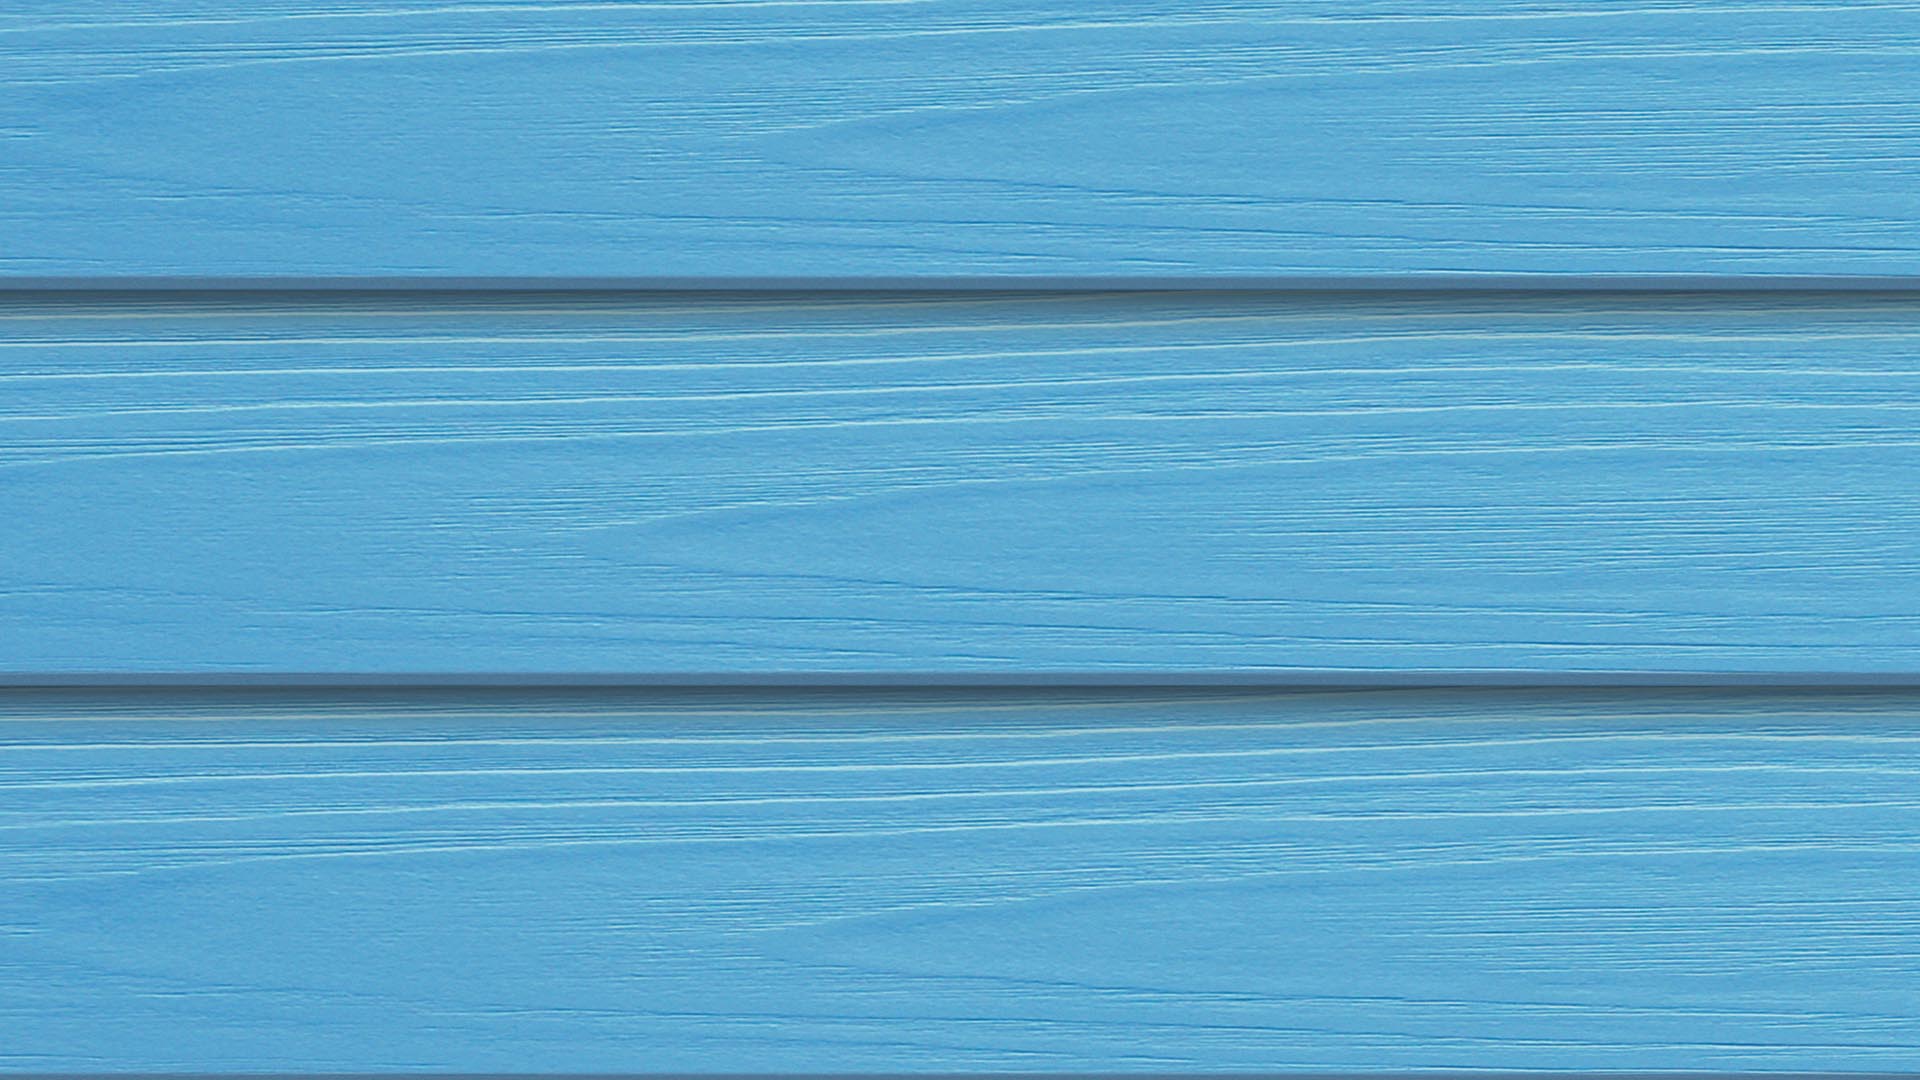 ไม้ฝา เอสซีจี รุ่นมาตรฐาน สีฟ้าใส ขนาด 15X300X0.8 ซม.